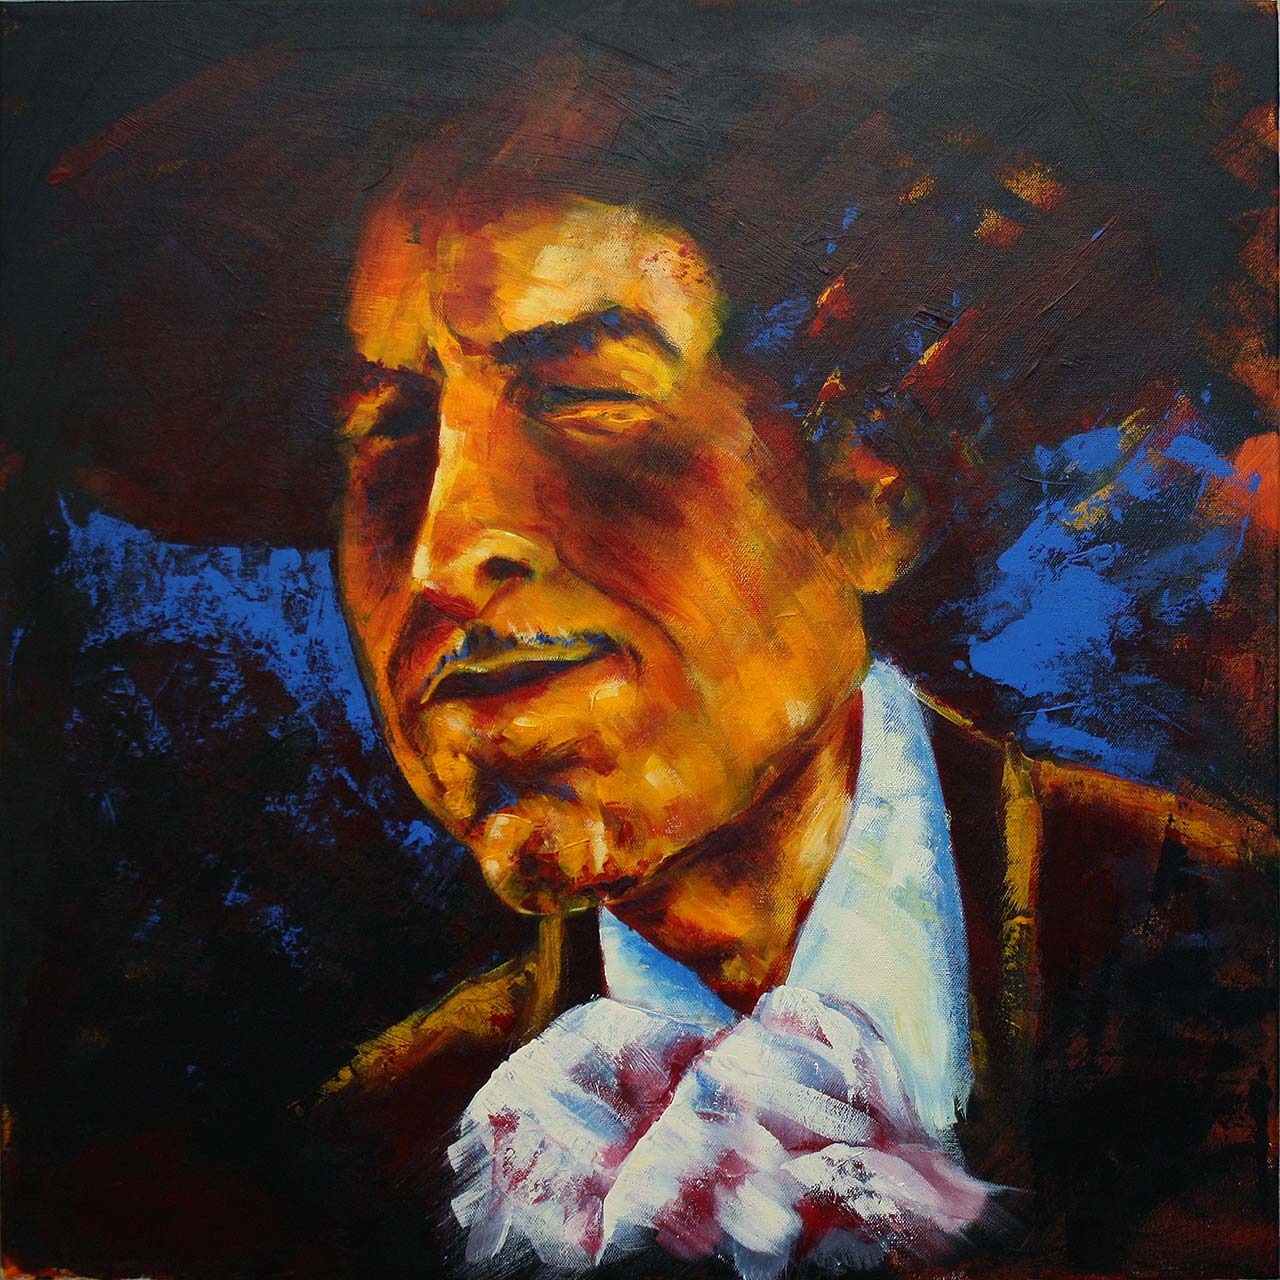 Portrætmaleri af Bob Dylan udført af portrætmaler Peter Simonsen